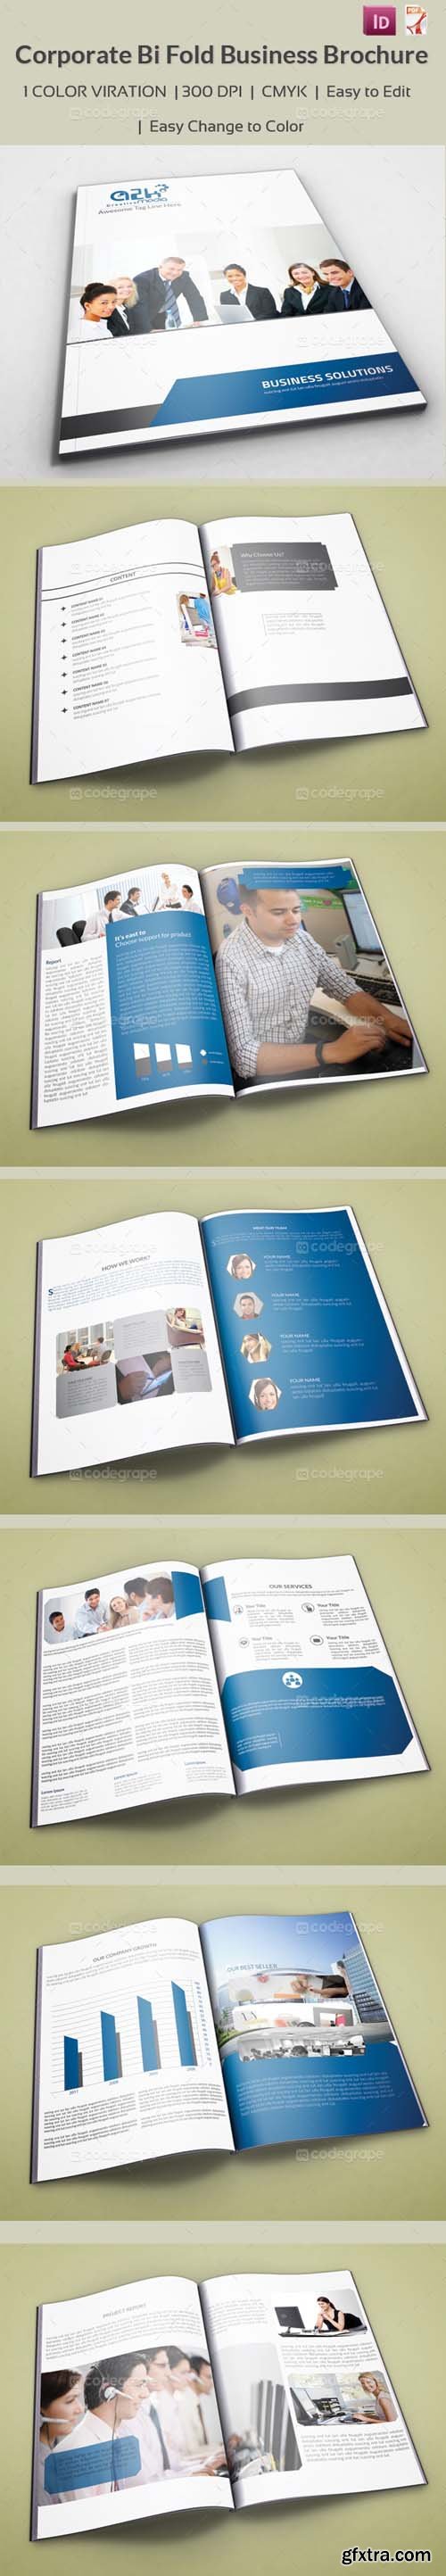 Corporate Bi Fold Business Brochure